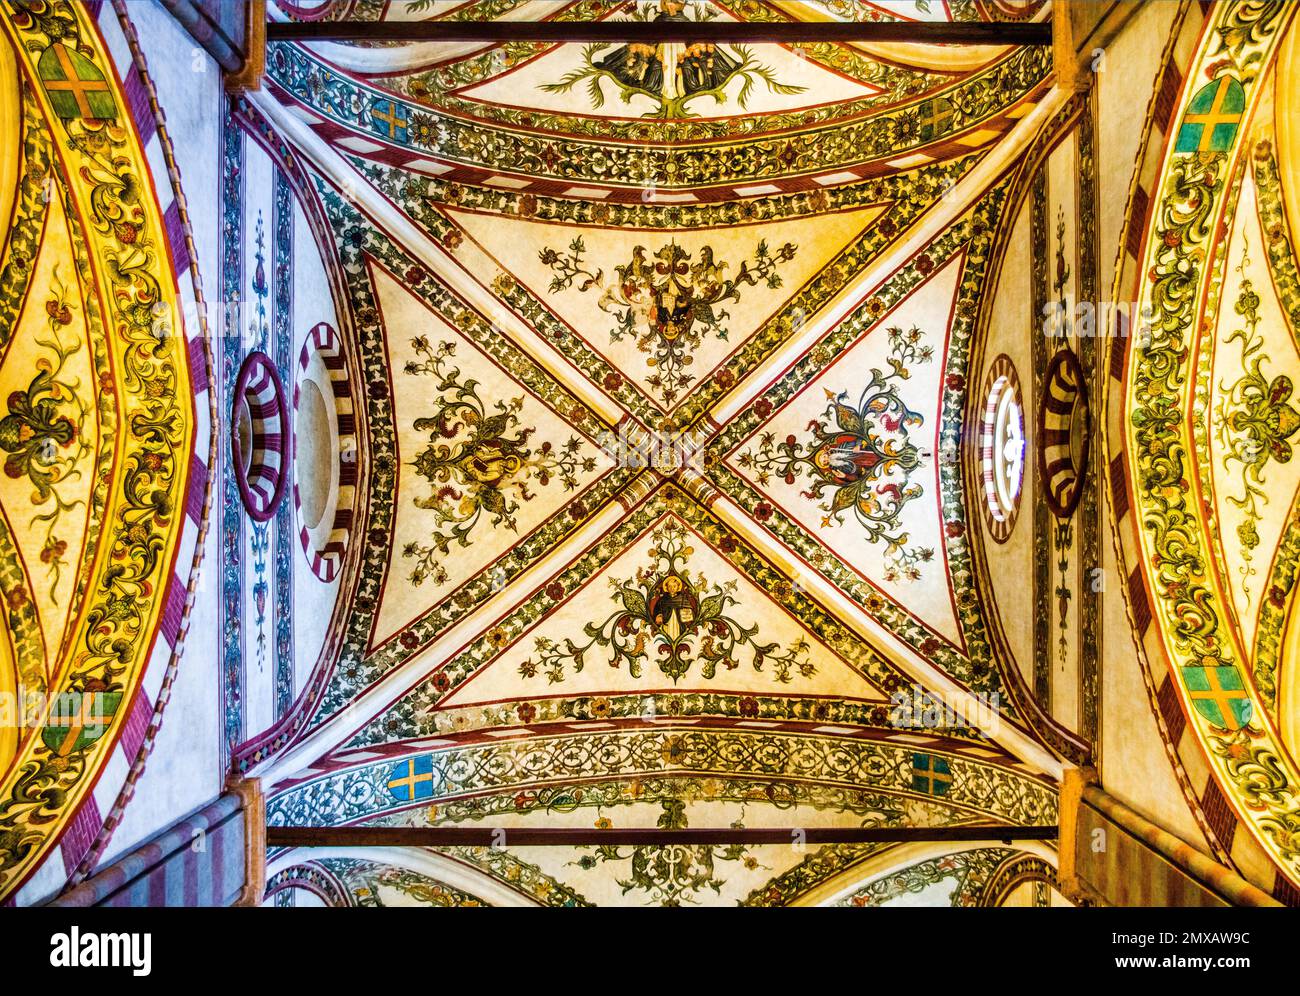 Decke, Basilika di Sant' Anastasia, ca. 1290, italienisch-gotisch, Verona mit mittelalterlicher Altstadt, italienisch-gotisch, ca. 1290, Veneto, Italien, Verona Stockfoto